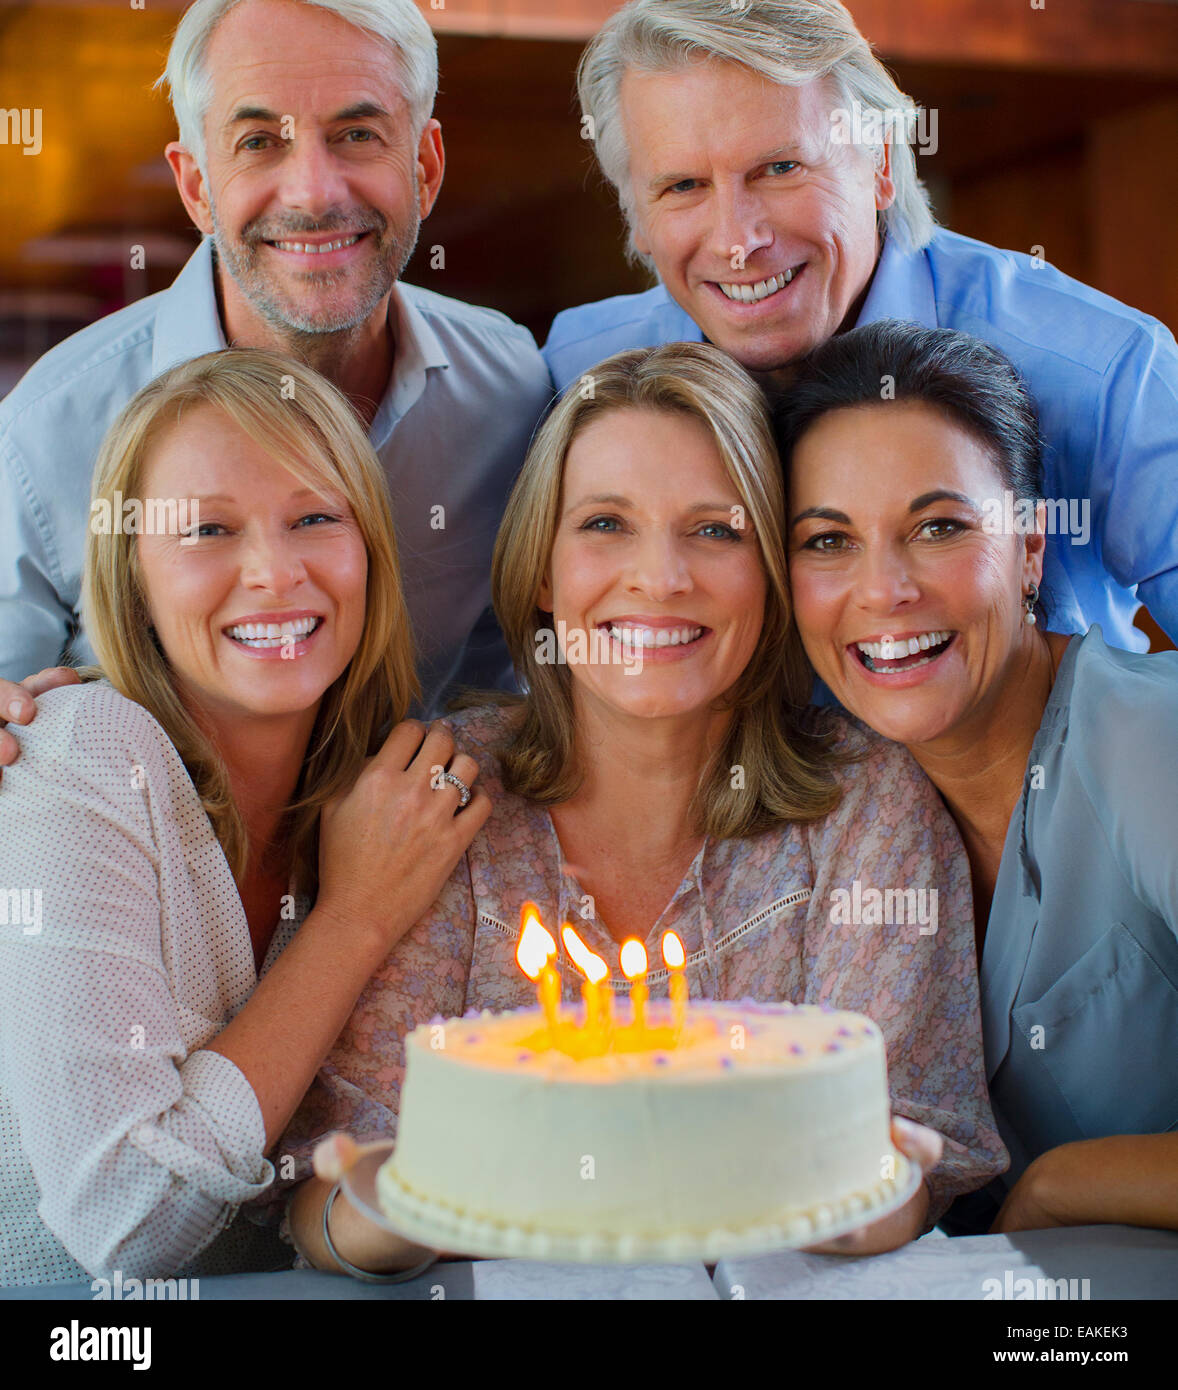 Porträt des Lächelns, reife Männer und Frauen mit Geburtstagstorte Stockfoto